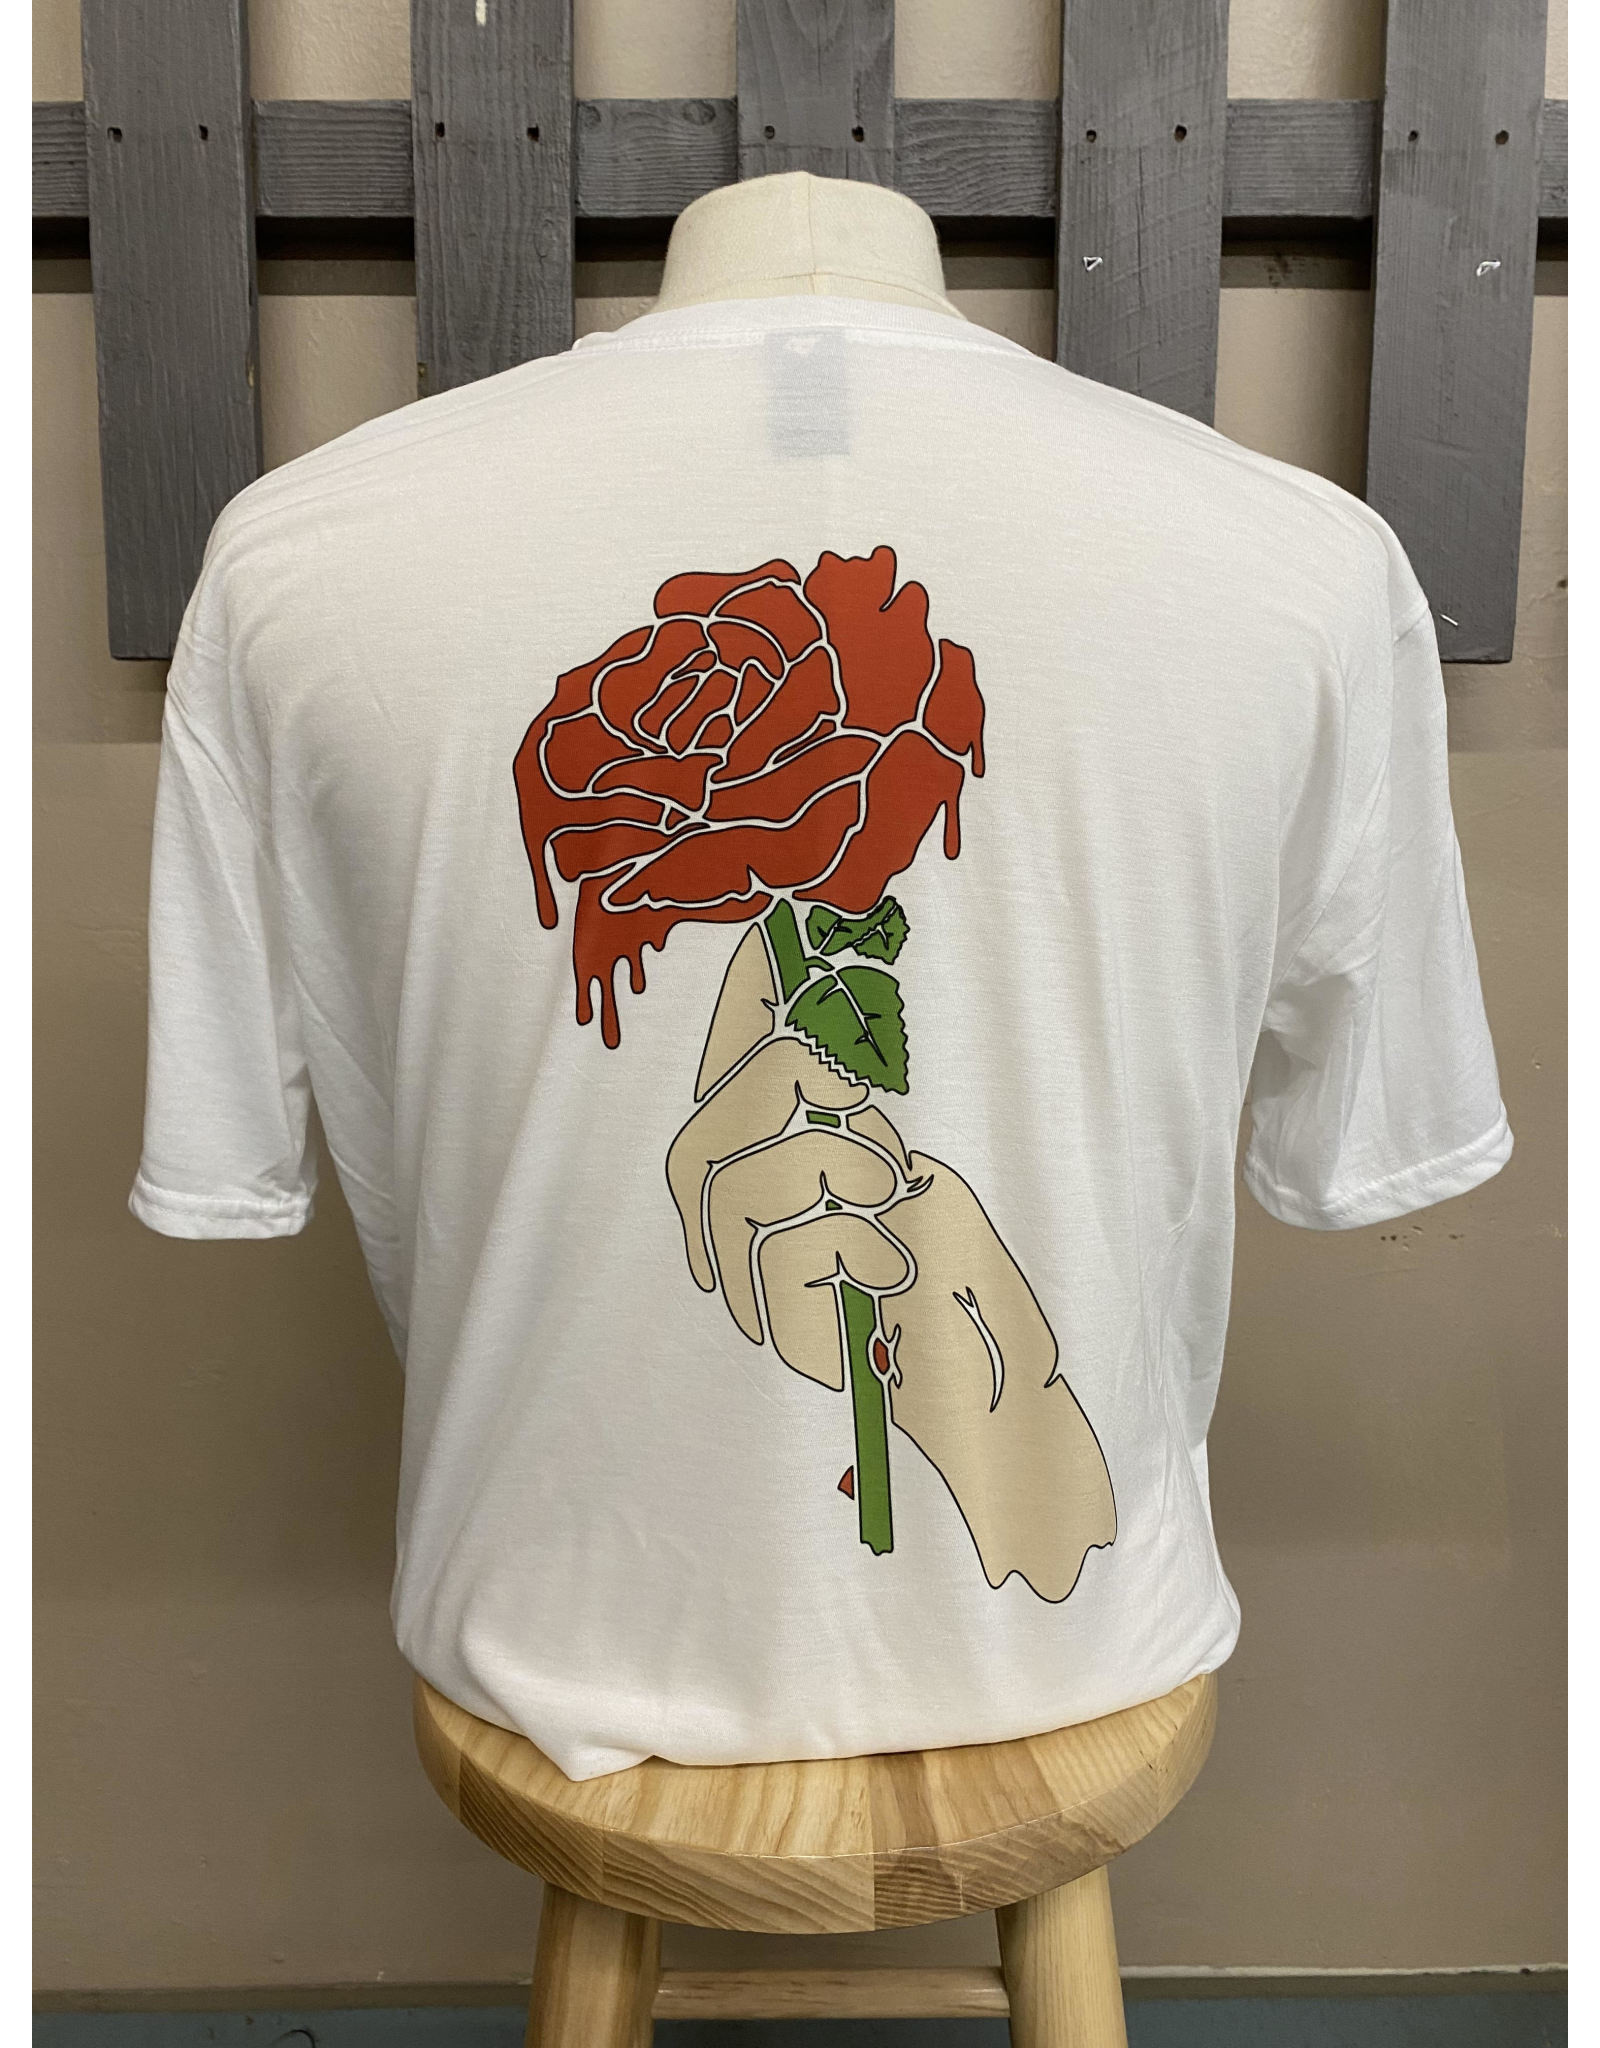 Templeton Rose "Paint Your Pain" T-Shirt